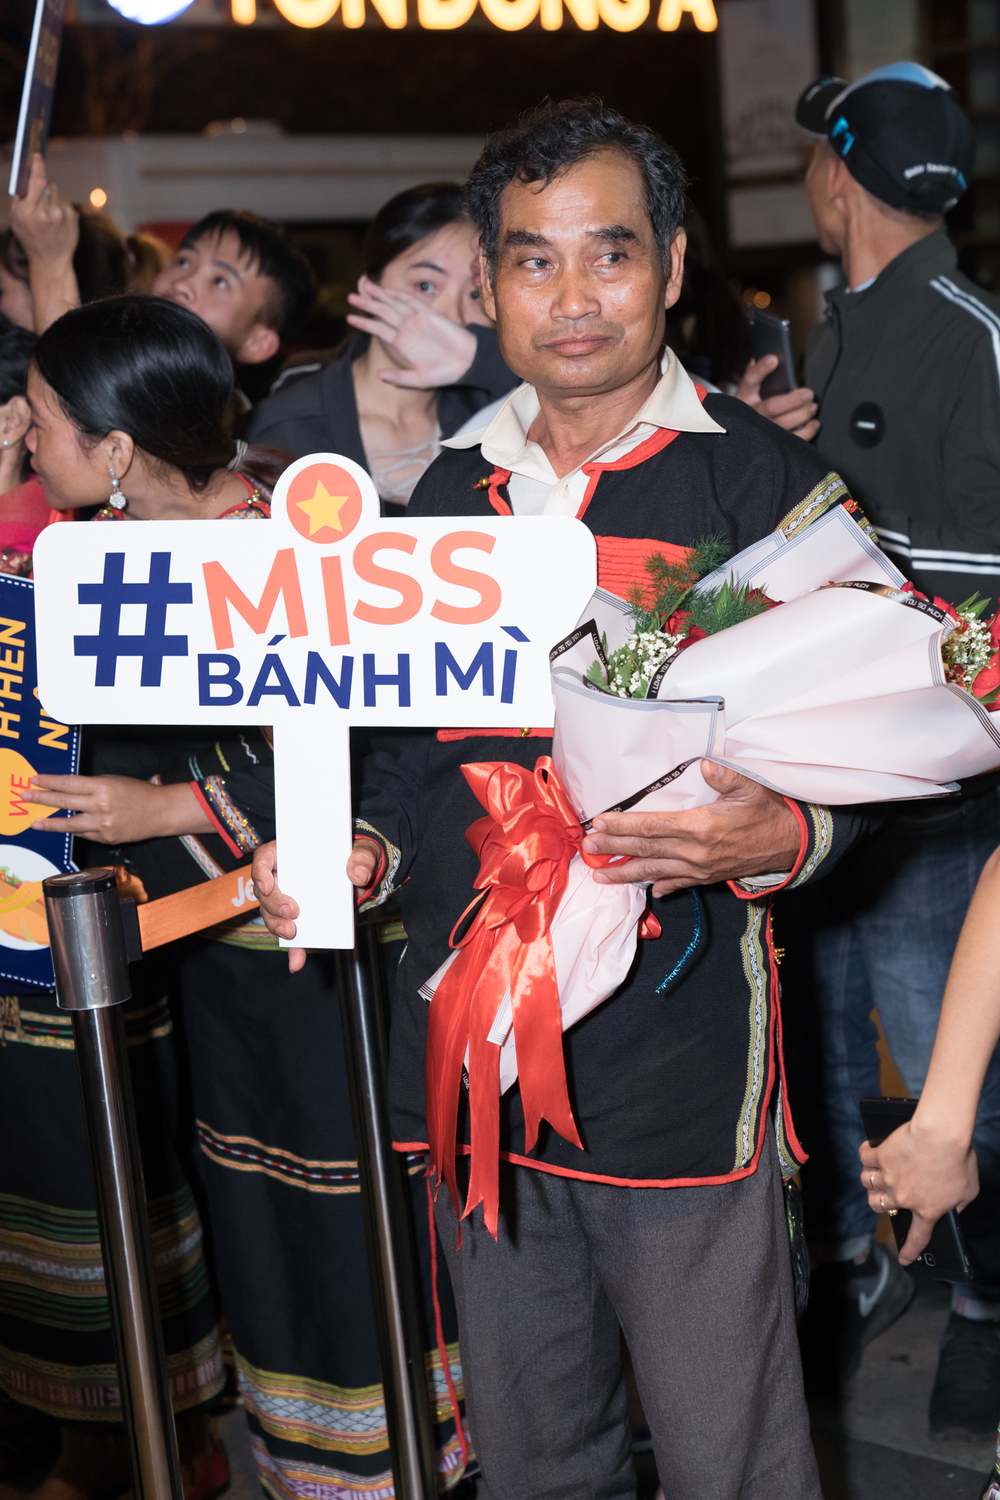 Sau thành tích Top 5 Miss Universe 2018, H'Hen Niê hạnh phúc trở về buôn làng - Tin sao Viet - Tin tuc sao Viet - Scandal sao Viet - Tin tuc cua Sao - Tin cua Sao